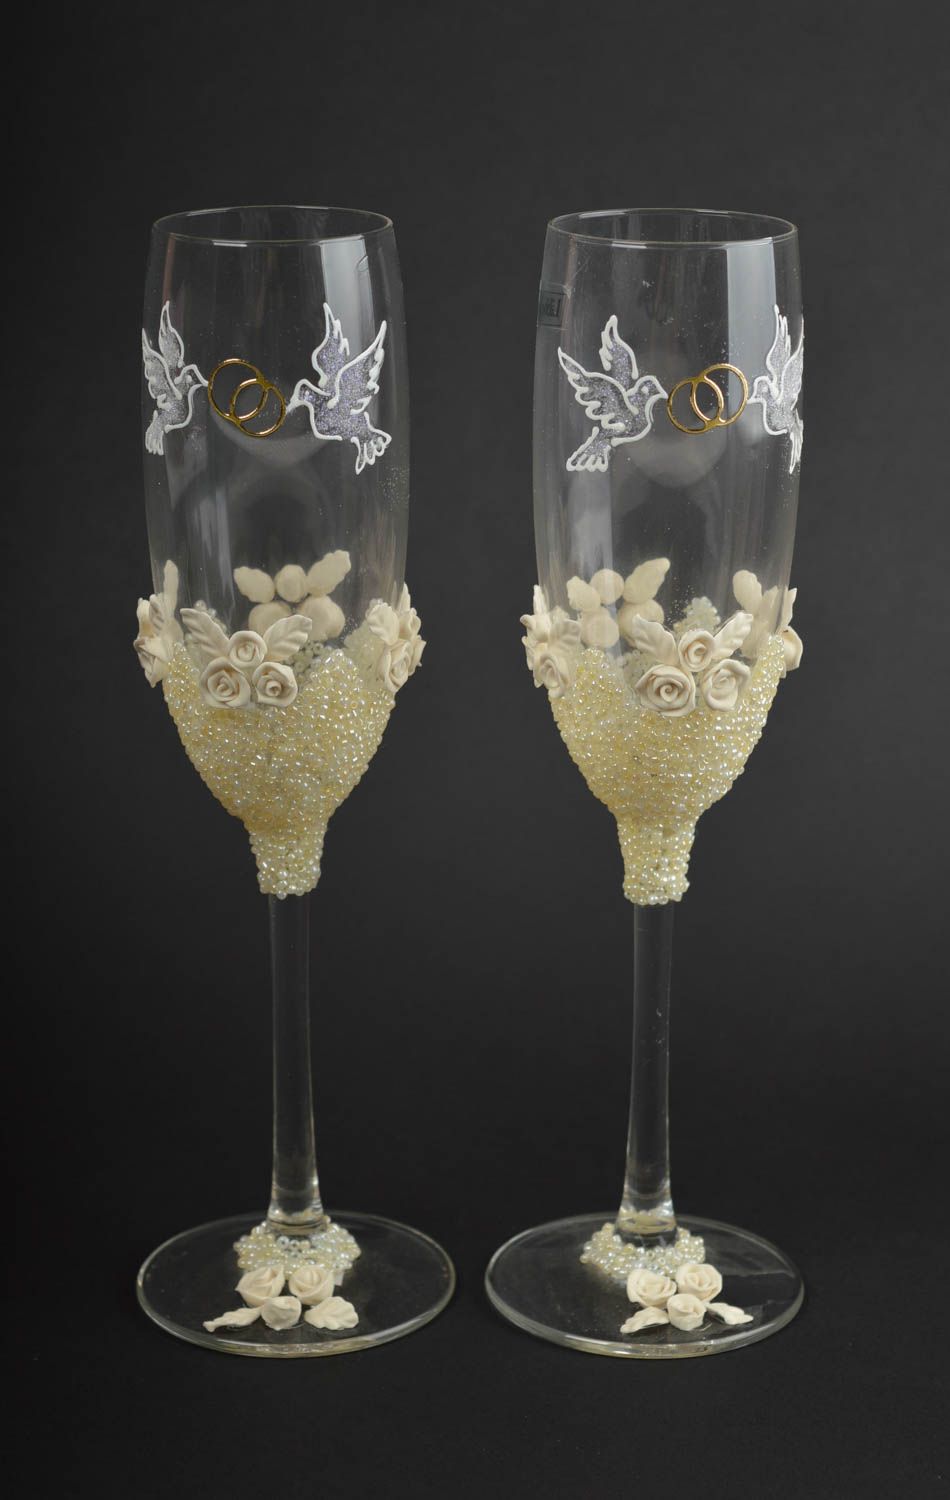 Handmade glasses unusual glasses for wedding designer glasses gift ideas photo 2